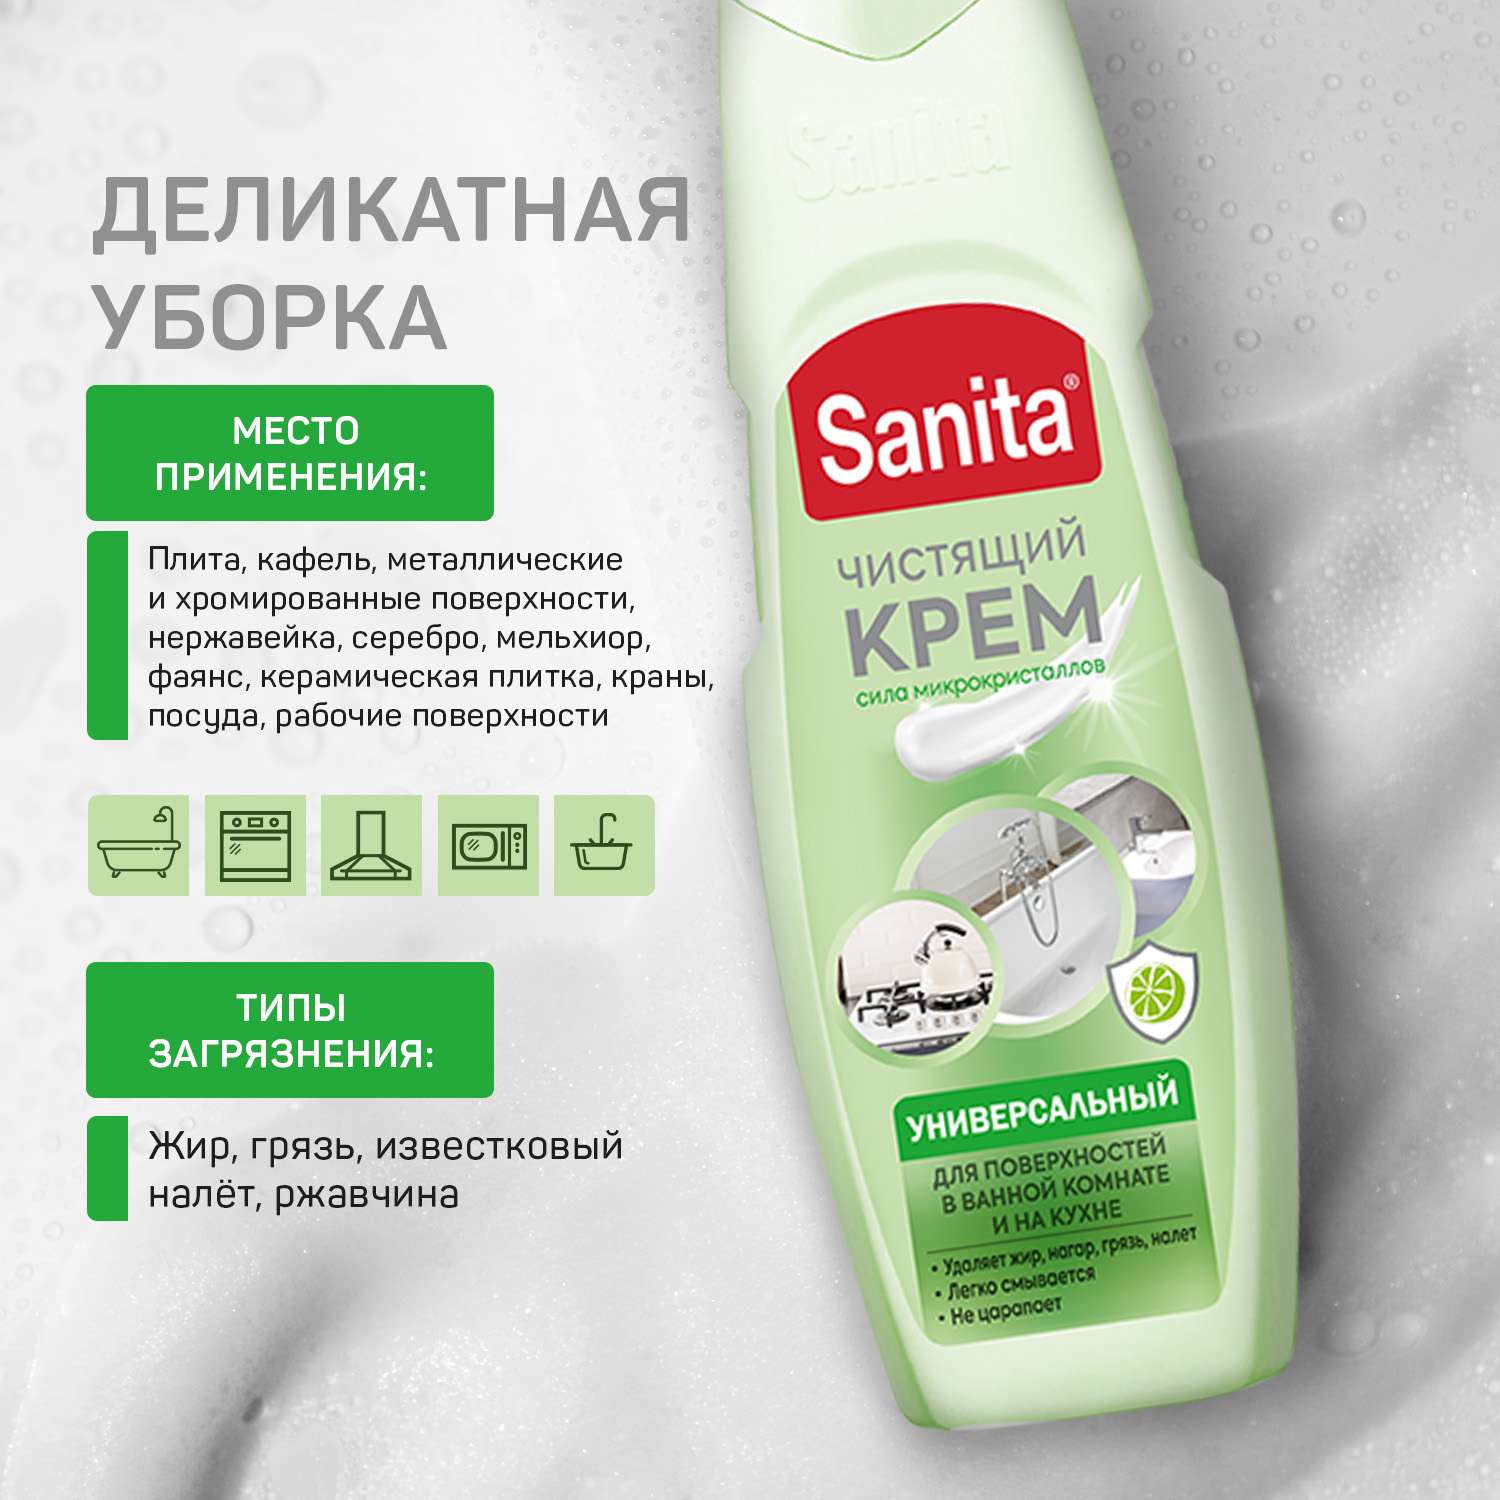 Набор бытовой химии Sanita для уборки дома 4 штуки - фото 9